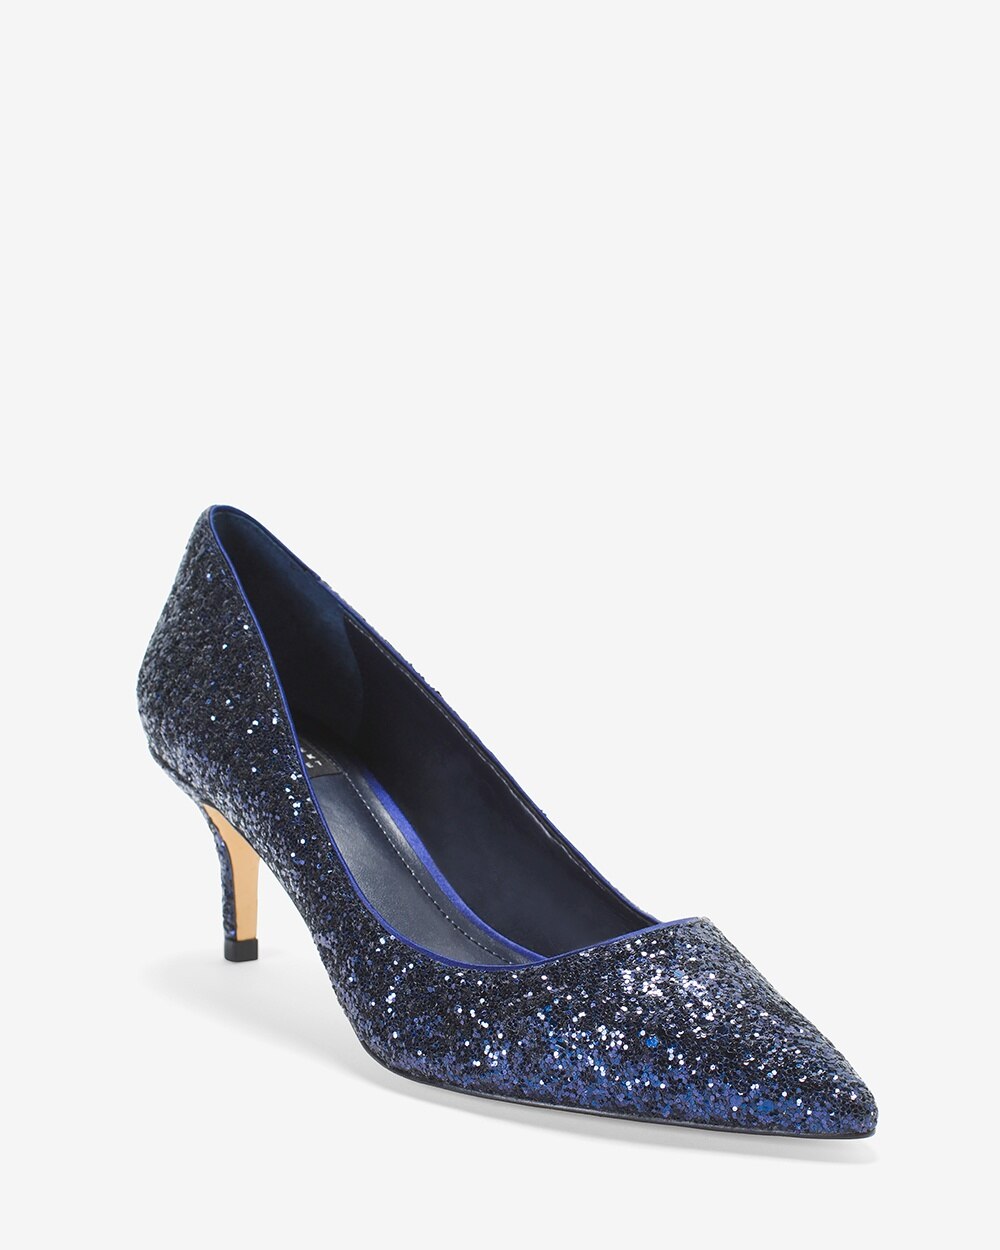 blue kitten heel shoes